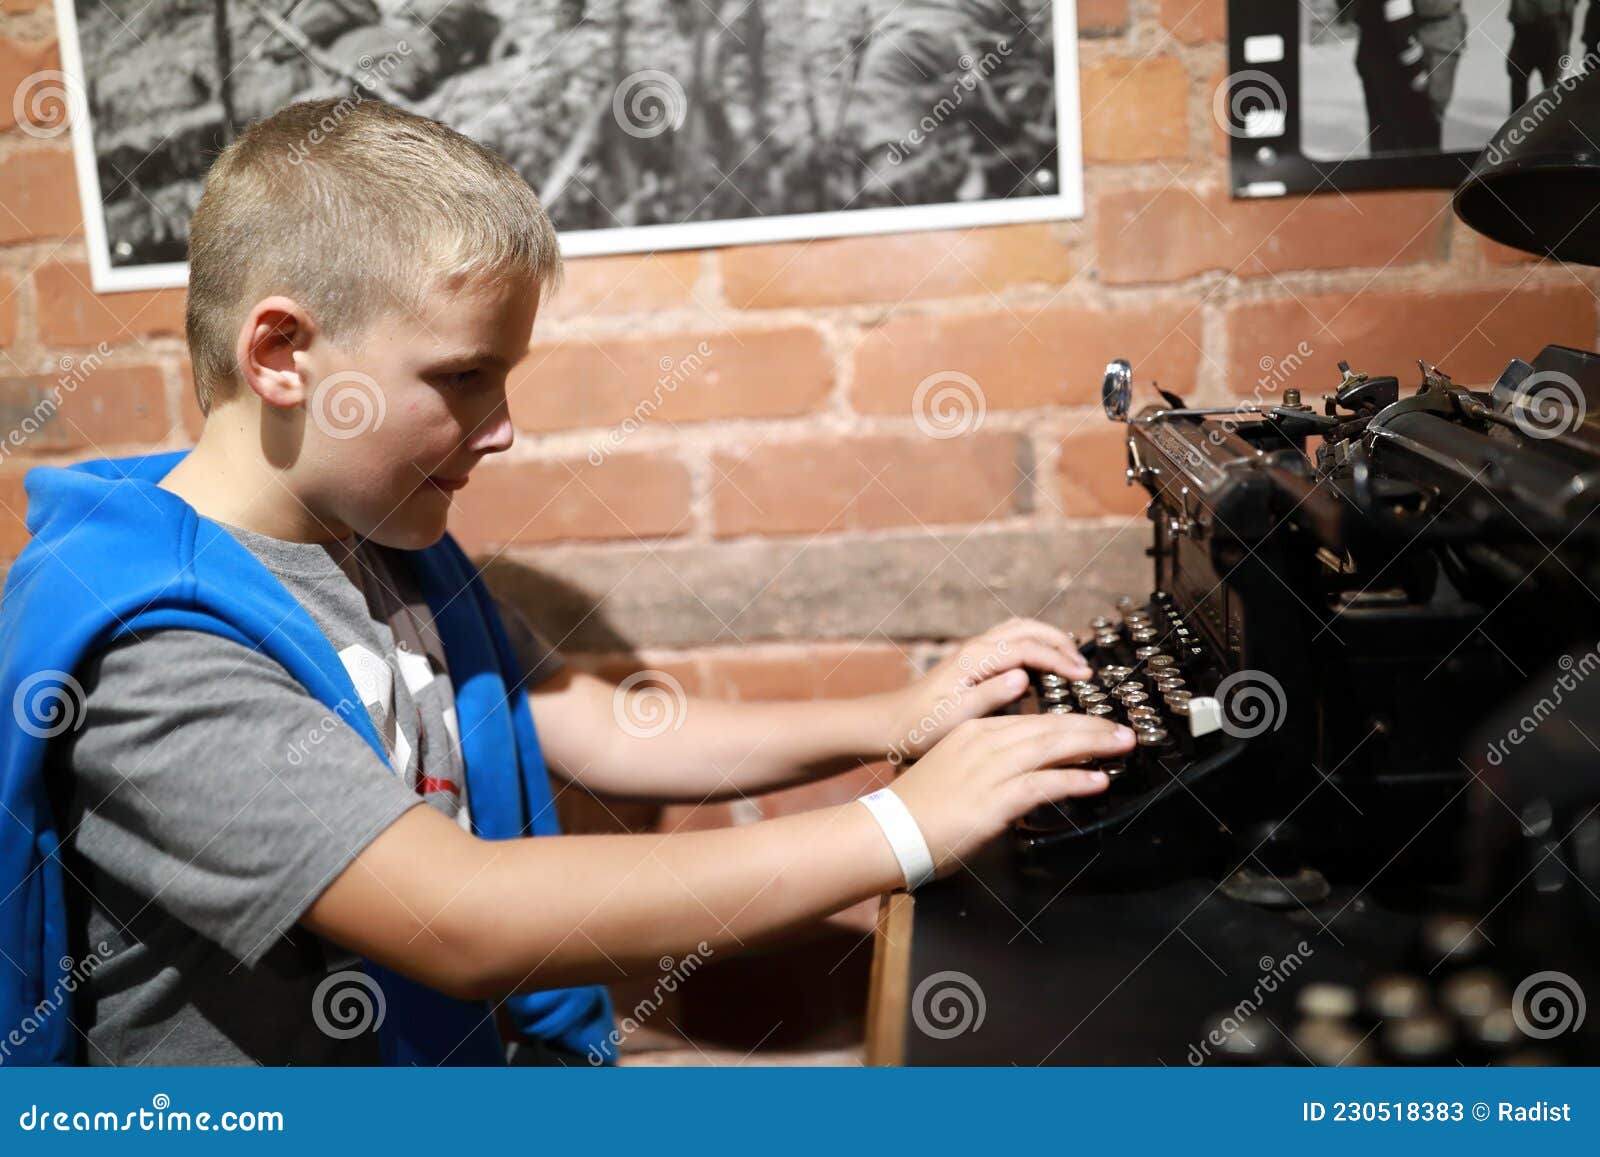 Enfant Avec Machine à écrire Rétro Image stock - Image du indoors, auteur:  230518383